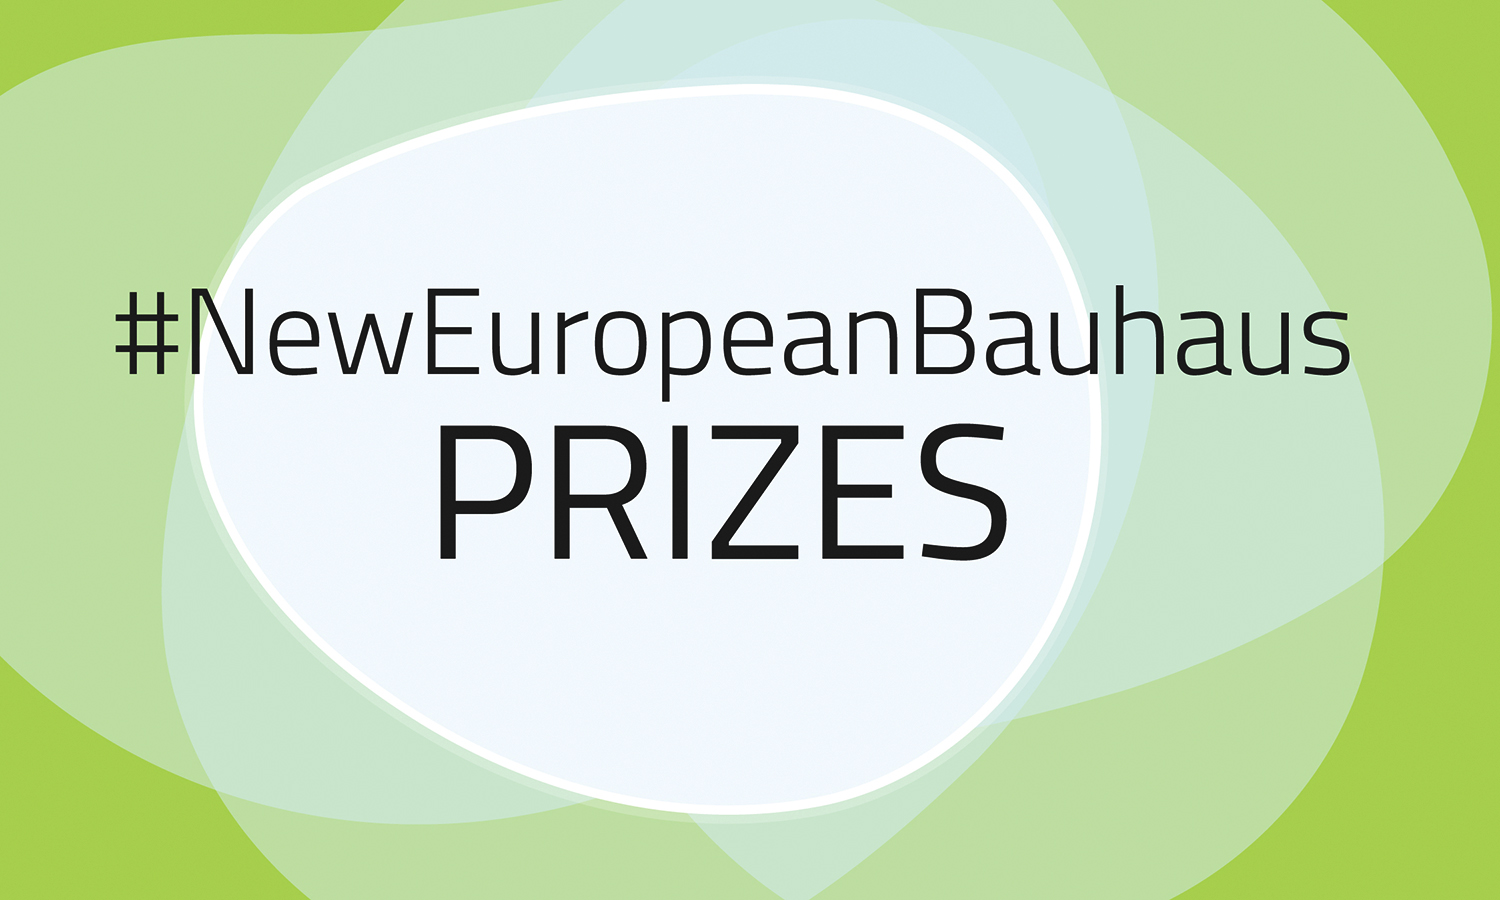 NEW EUROPEAN Bauhaus / prizes 2021